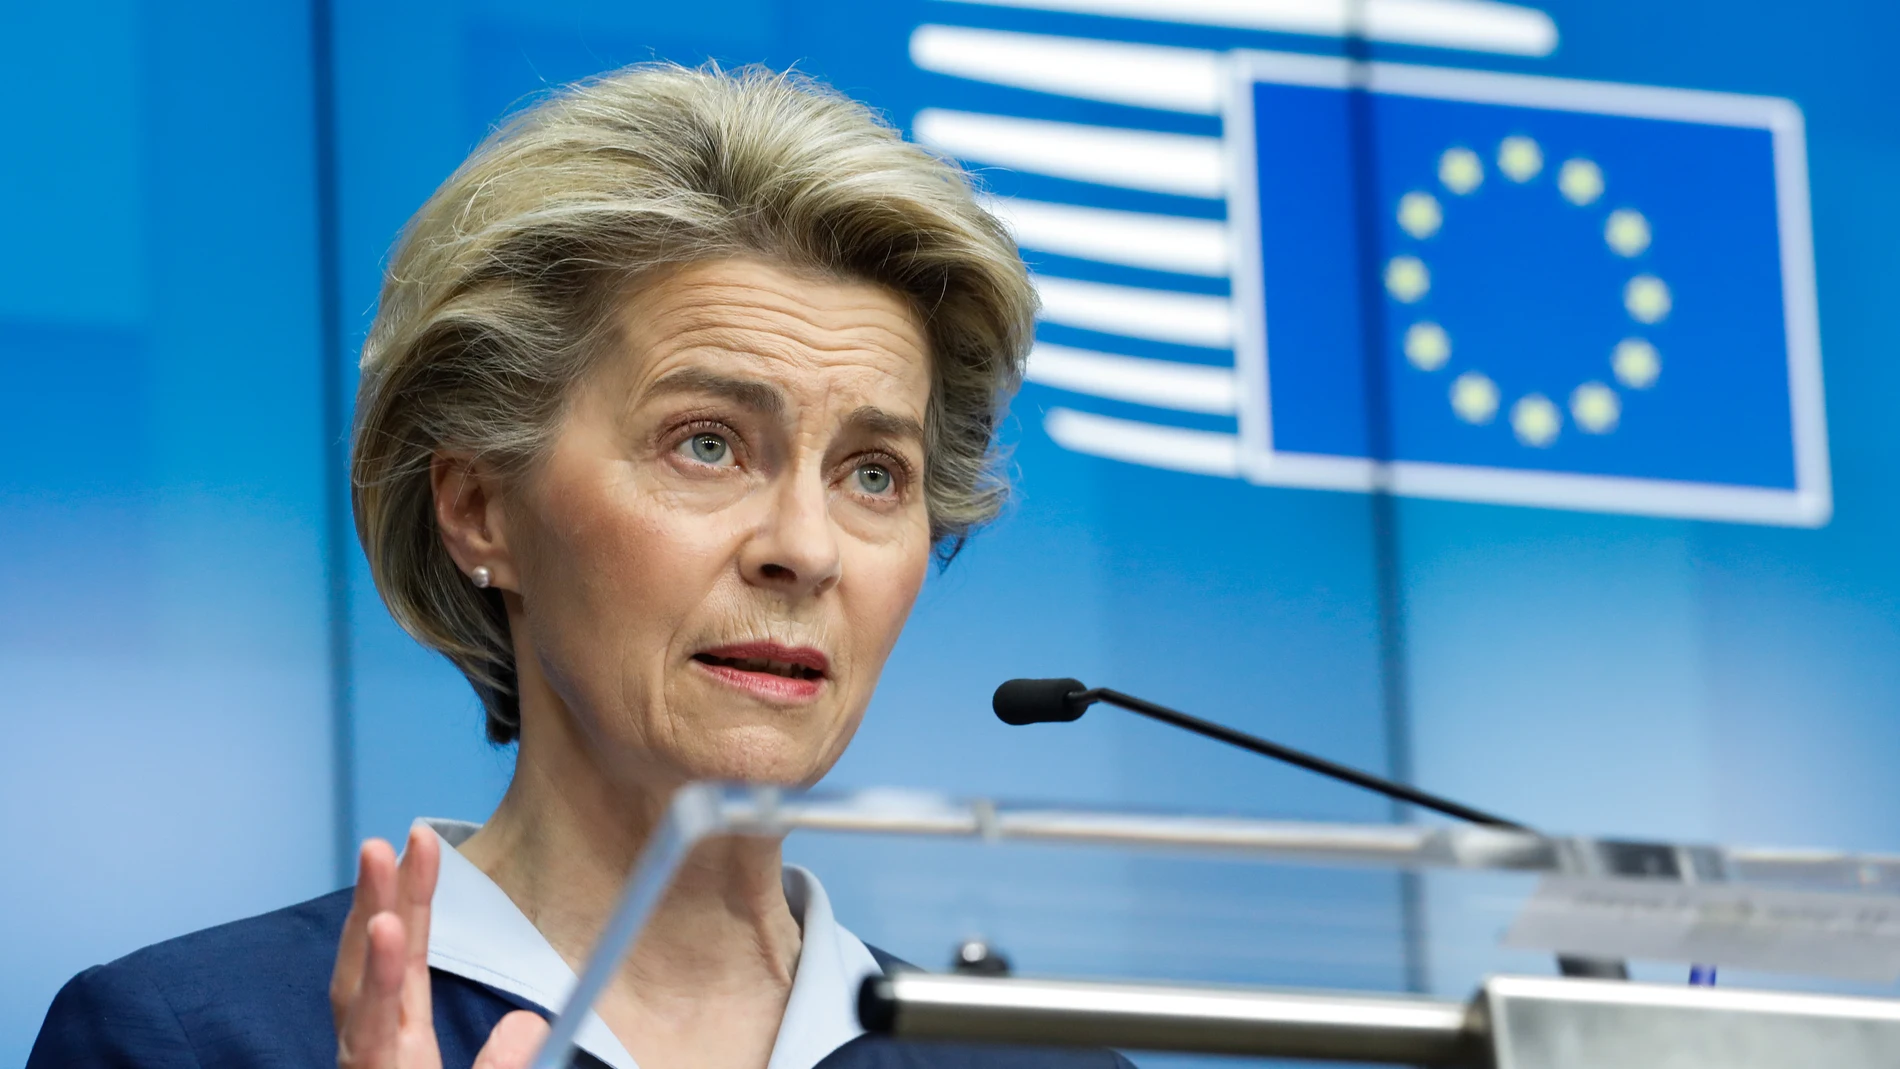 La presidenta de la Comisiión Europea (CE), Ursula von der Leyen